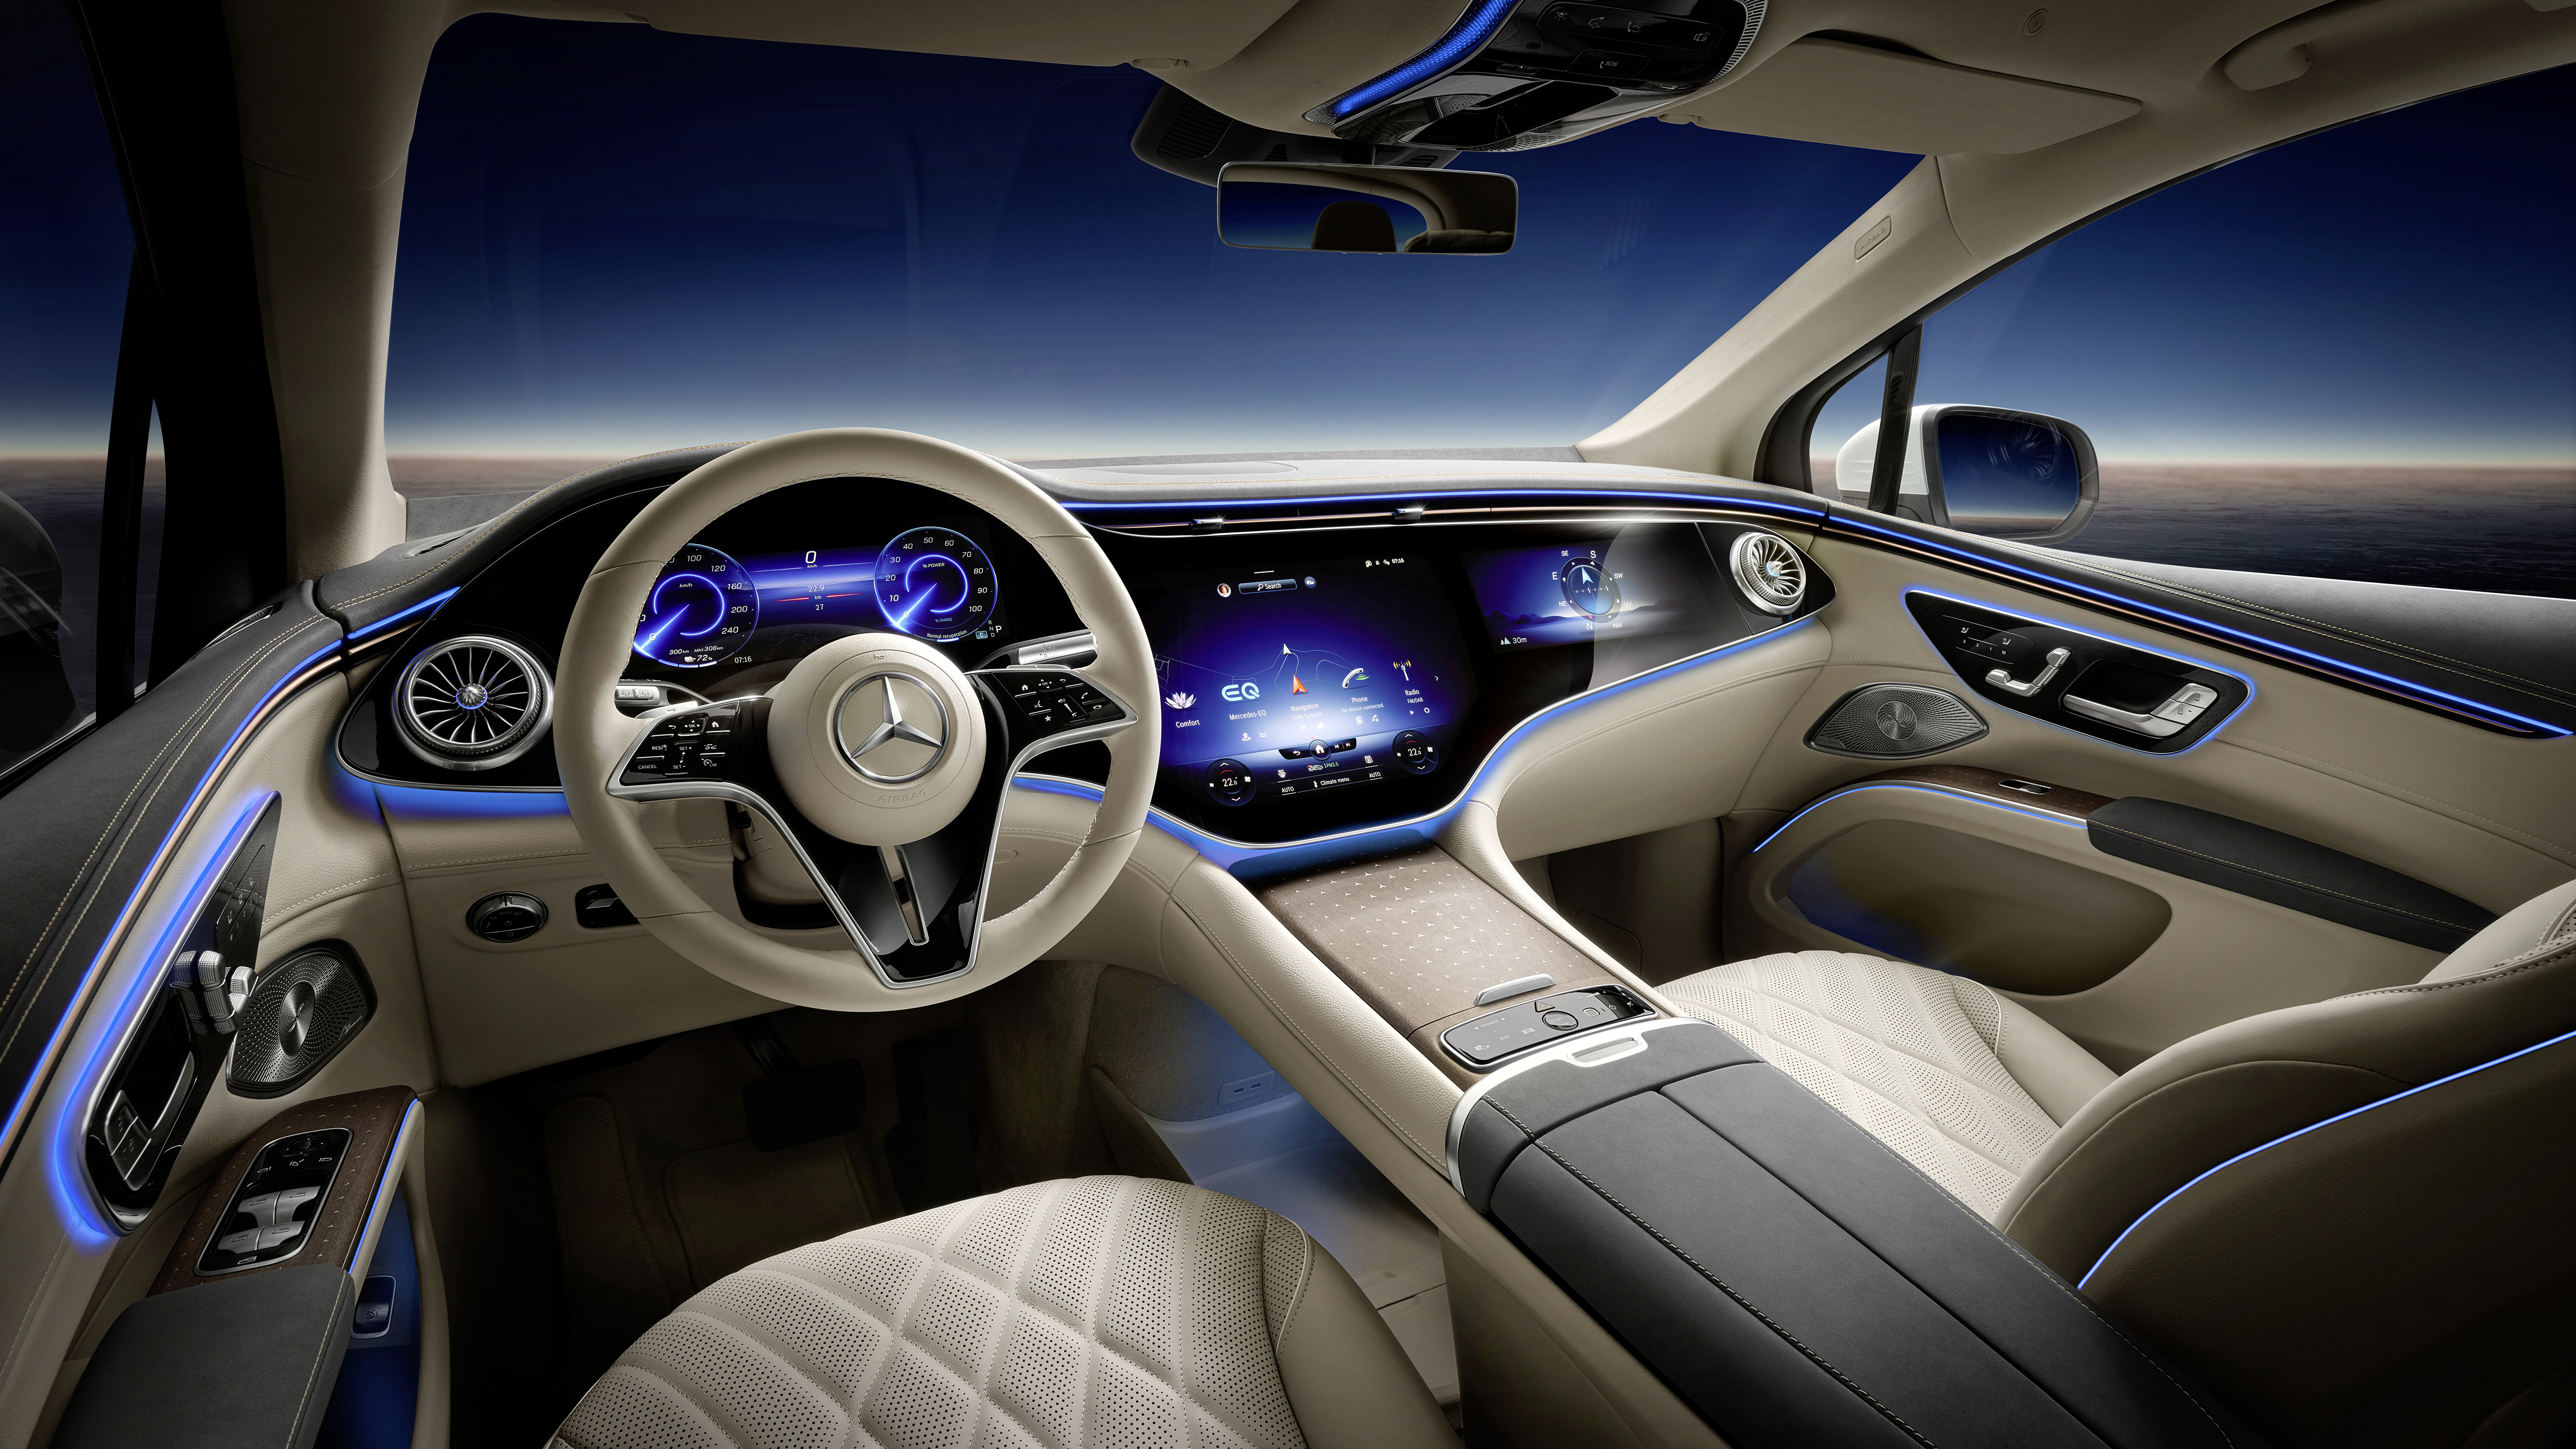 Elektrikli Mercedes-Benz EQS SUV tanıtıldı: İşte tasarımı ve özellikleri